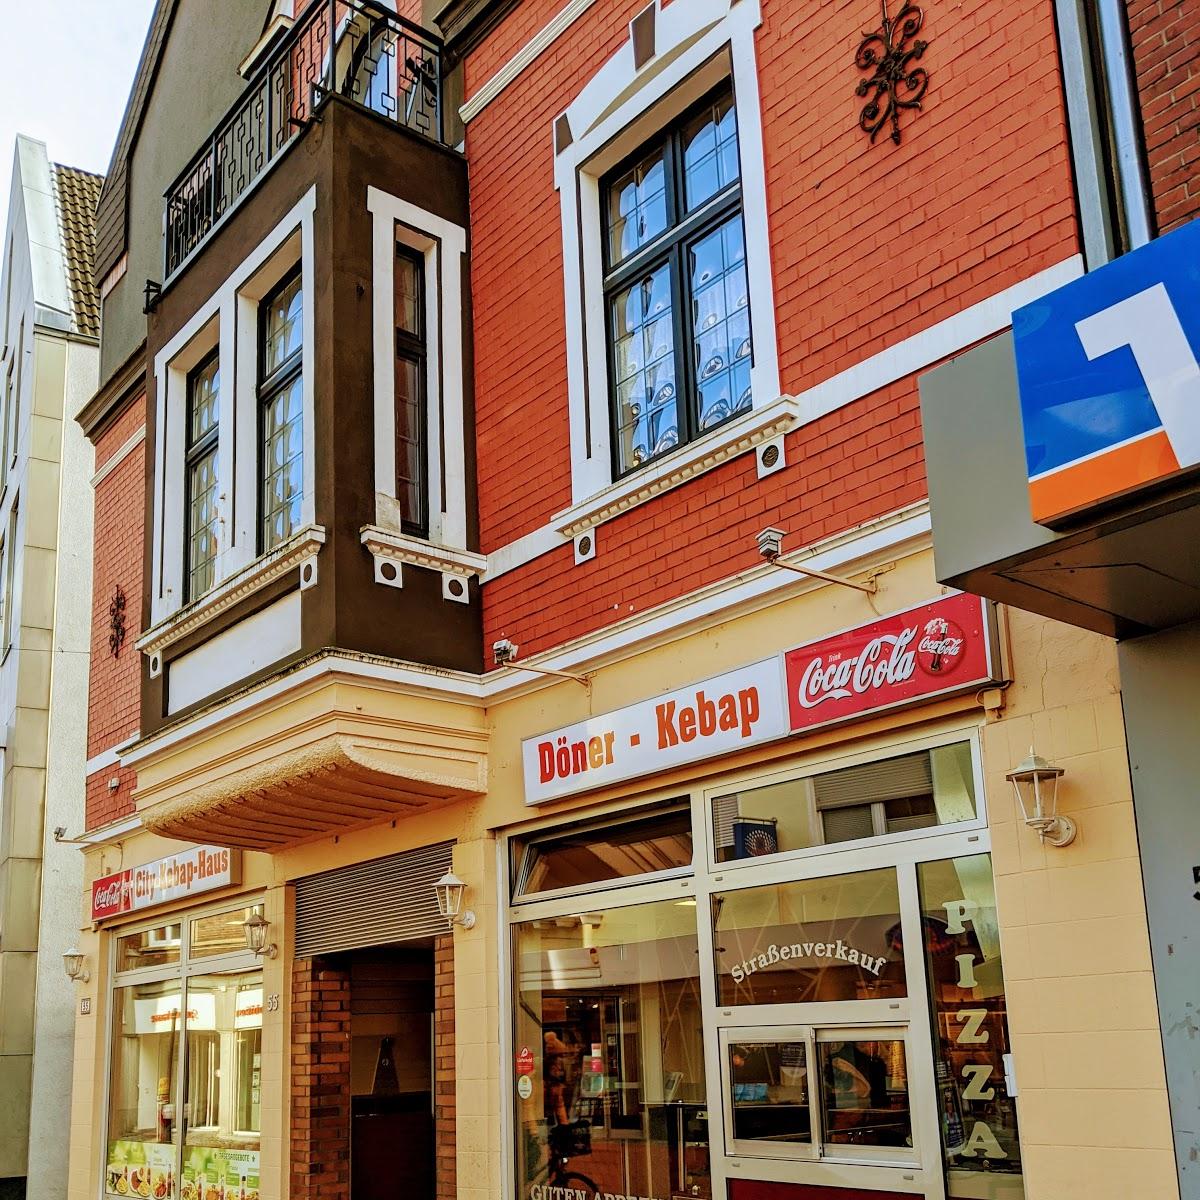 Restaurant "Restaurant City-Kebab-Haus" in Haltern am See